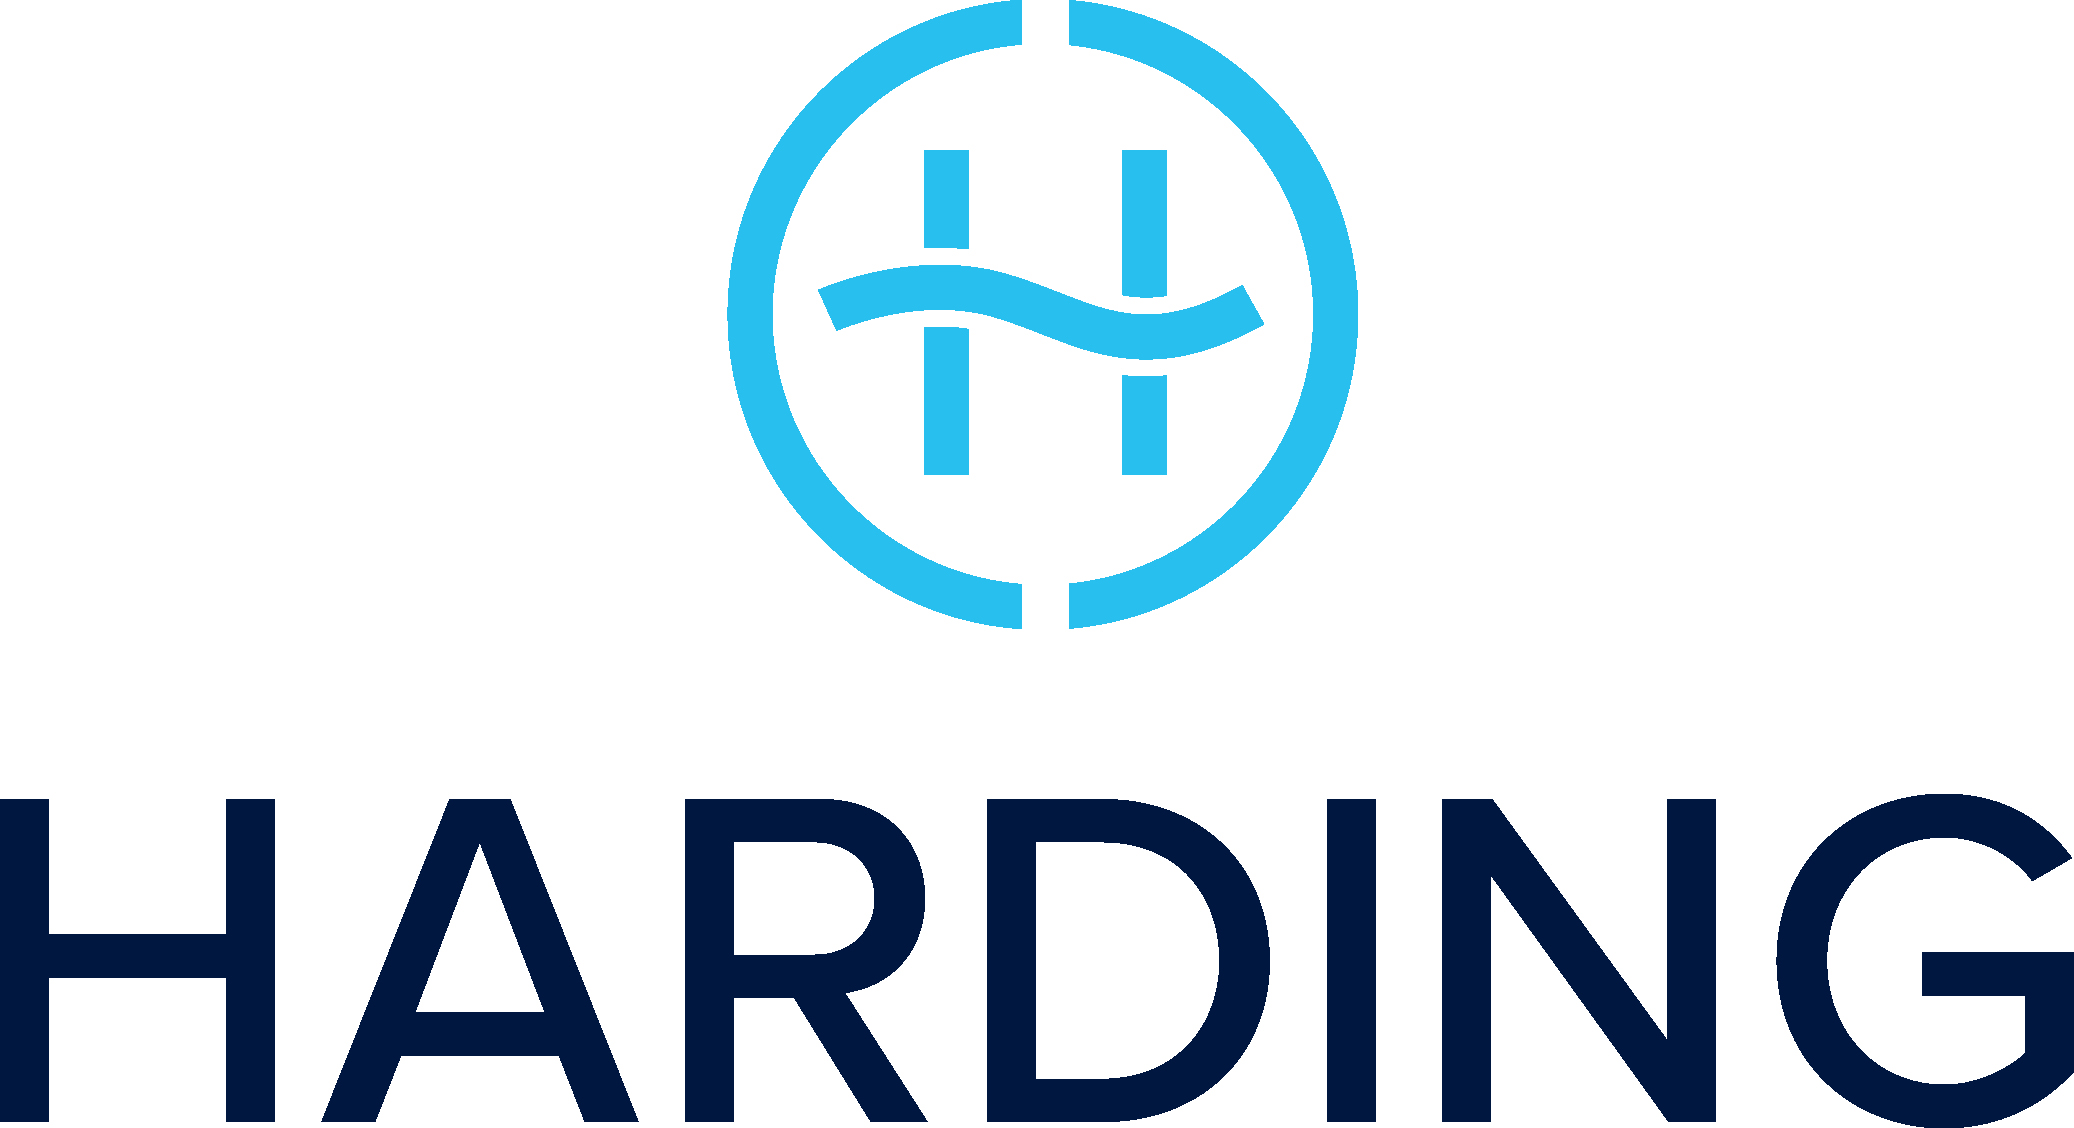 Harding logo for Bristol Sept 22